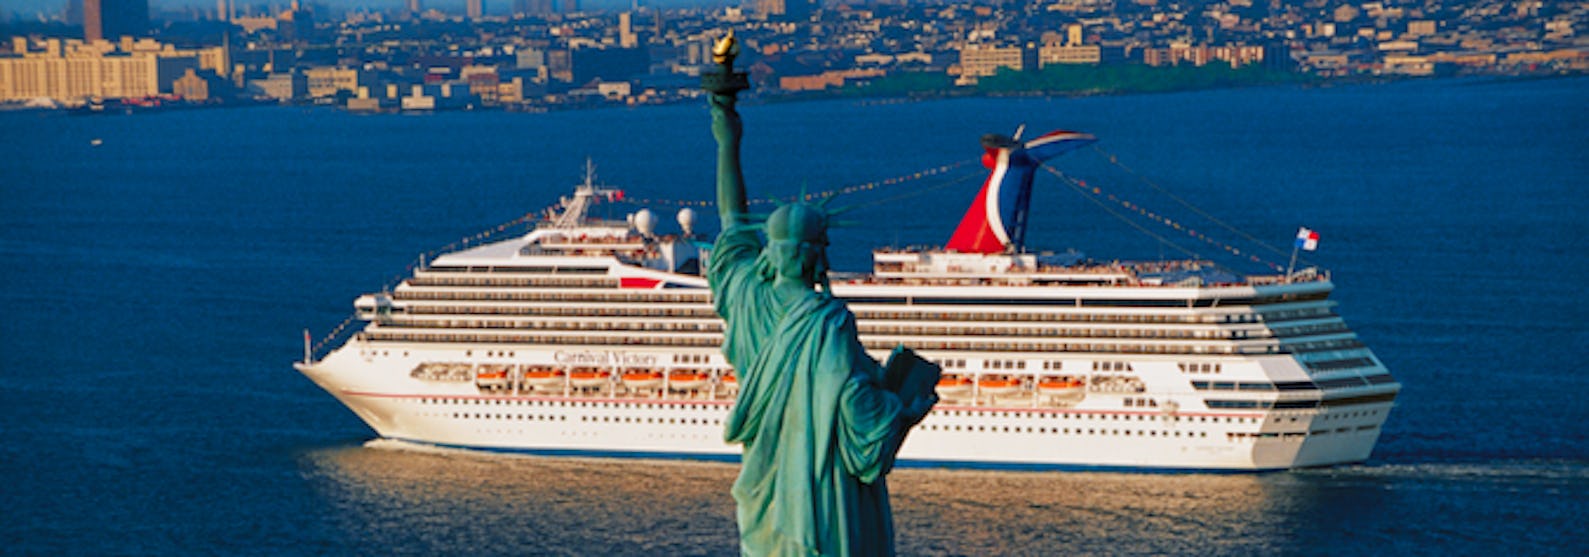 Fartyget Carnival Radiance kryssar förbi Statue of Liberty, frihetsgudinnan, i New York.